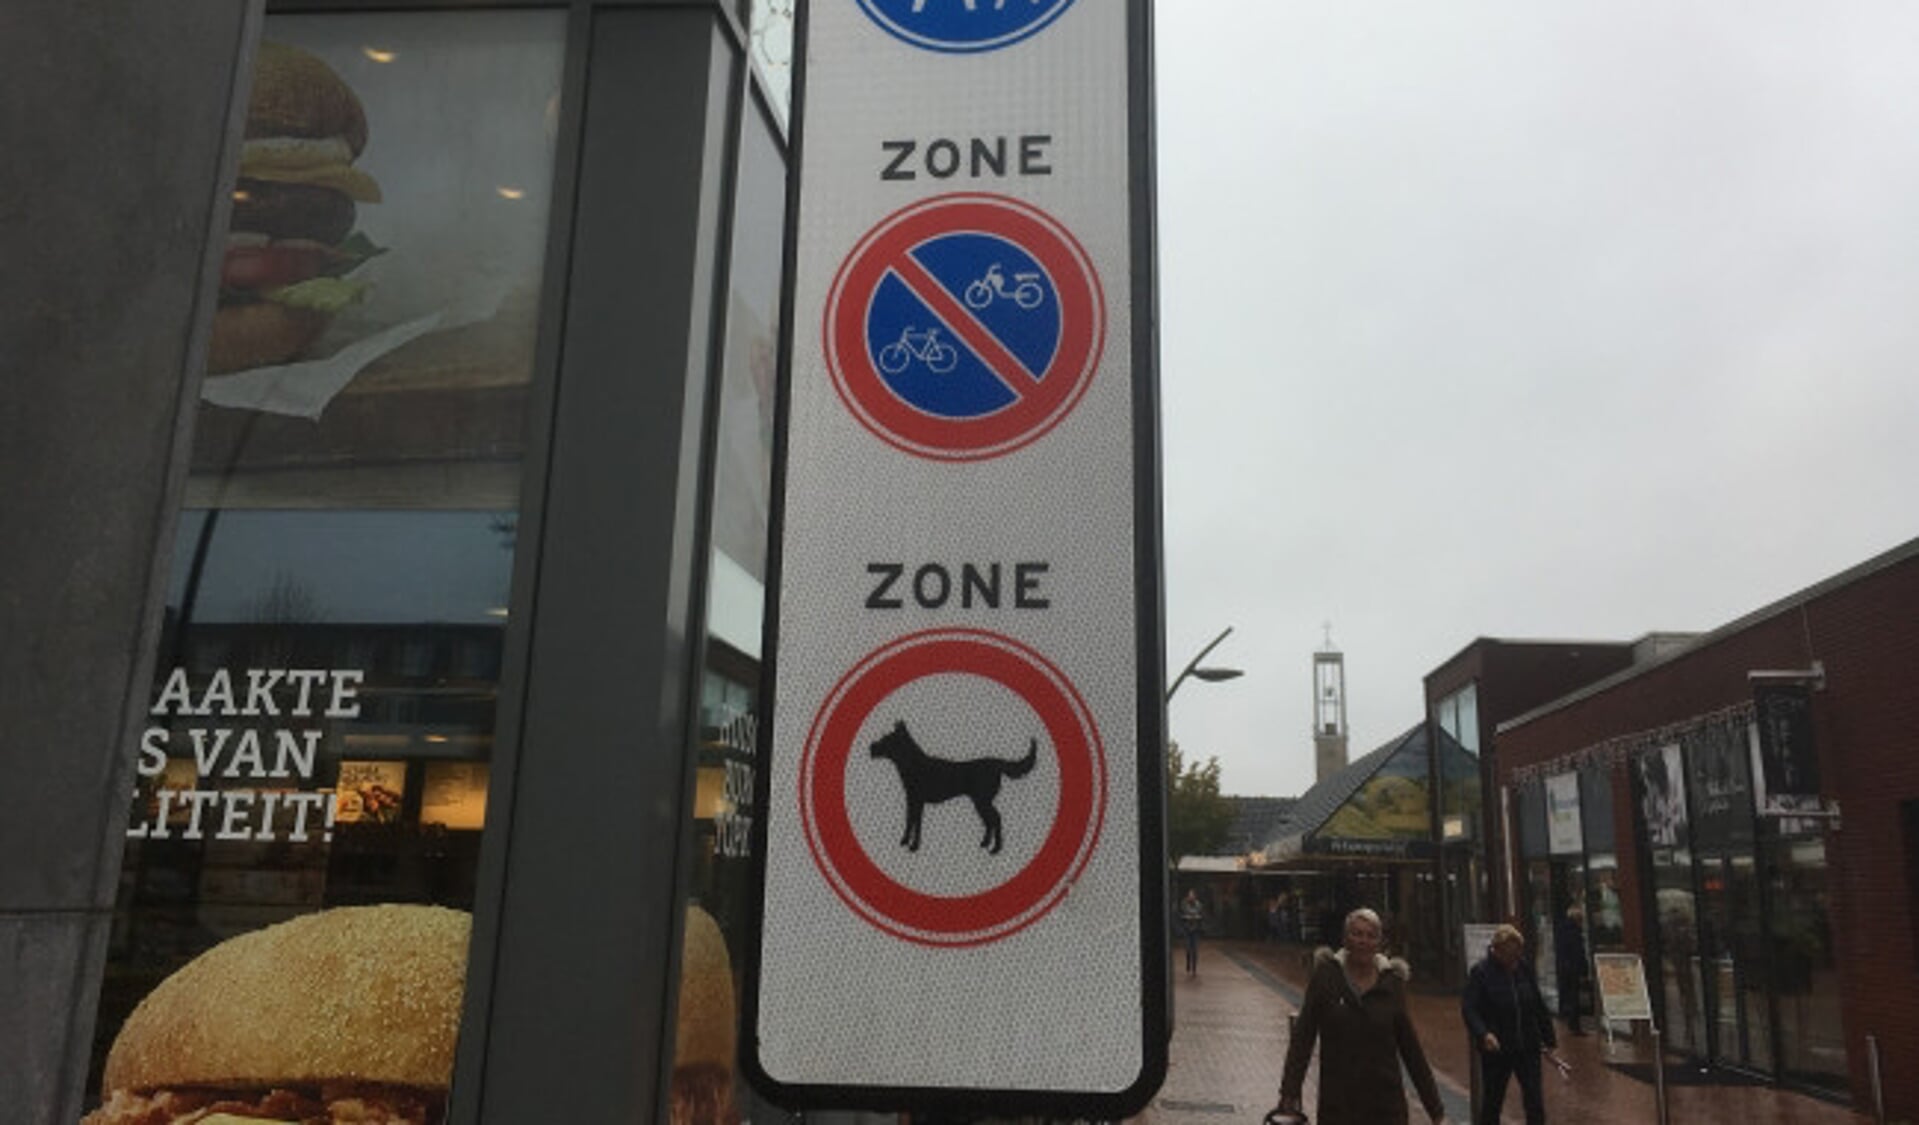  Winkelcentrum Suydersee is verboden voor honden.